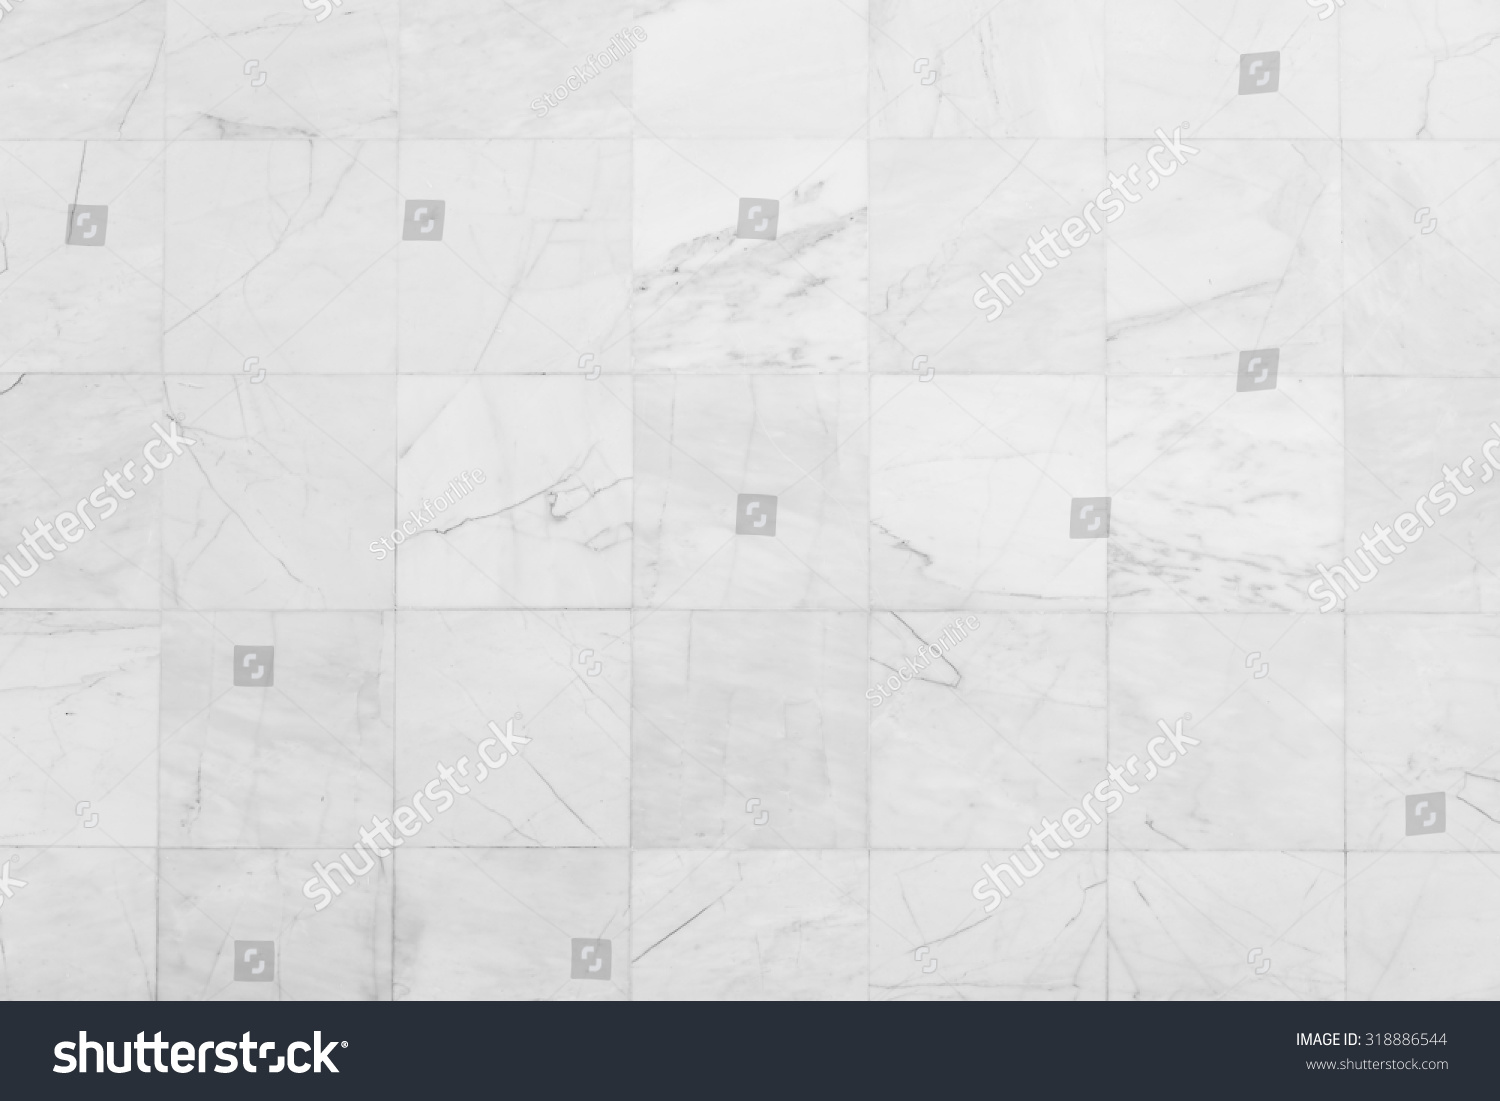 White tiles textures background #318886544